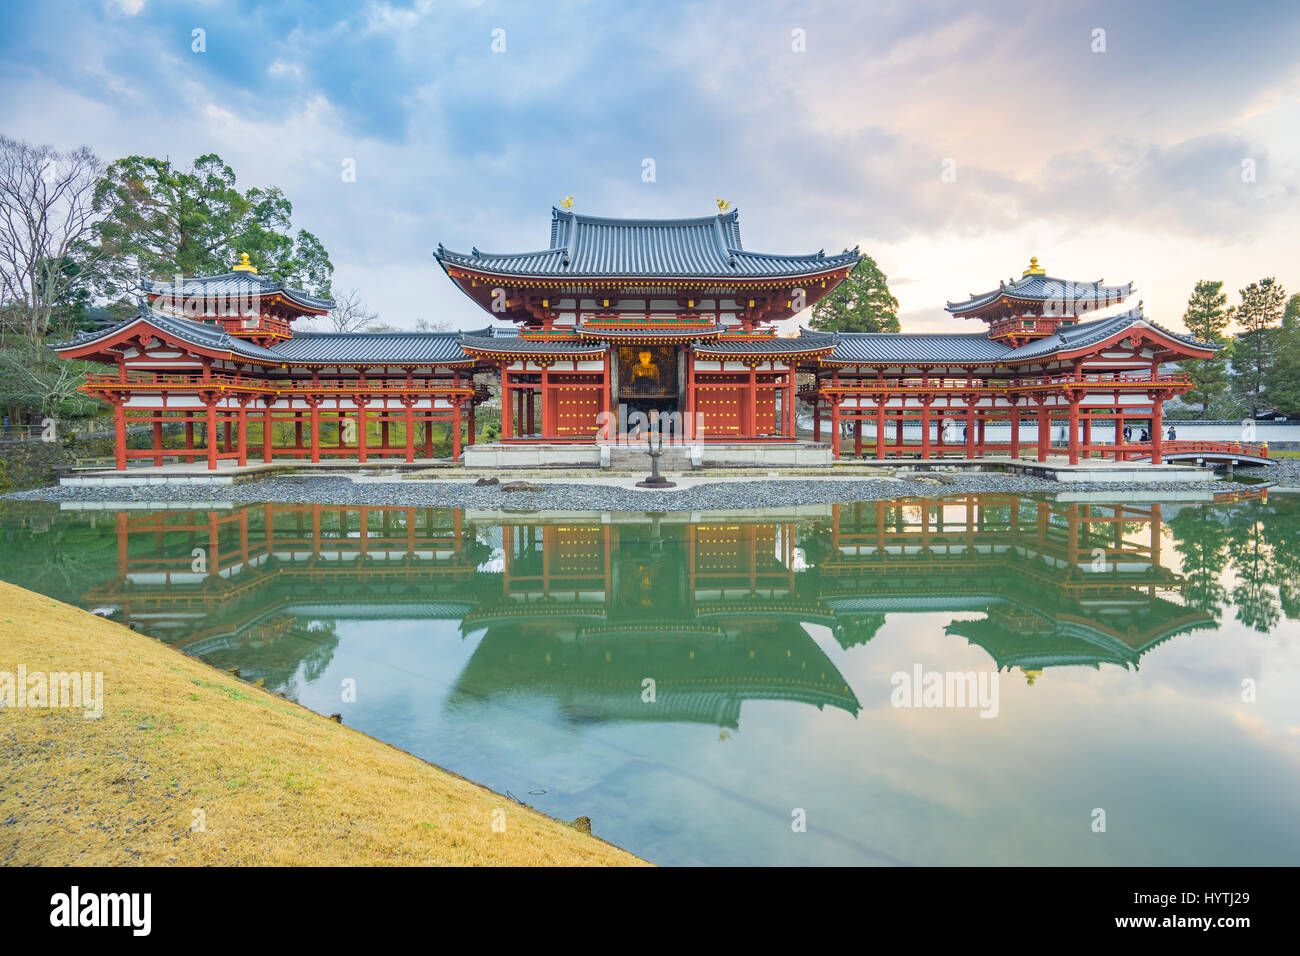 Kyoto, Giappone - 31 dicembre 2015: Byodo-in è un tempio buddista nella città di Uji nella prefettura di Kyoto, Giappone. Esso è congiuntamente un tempio di Jodo-shu Foto Stock